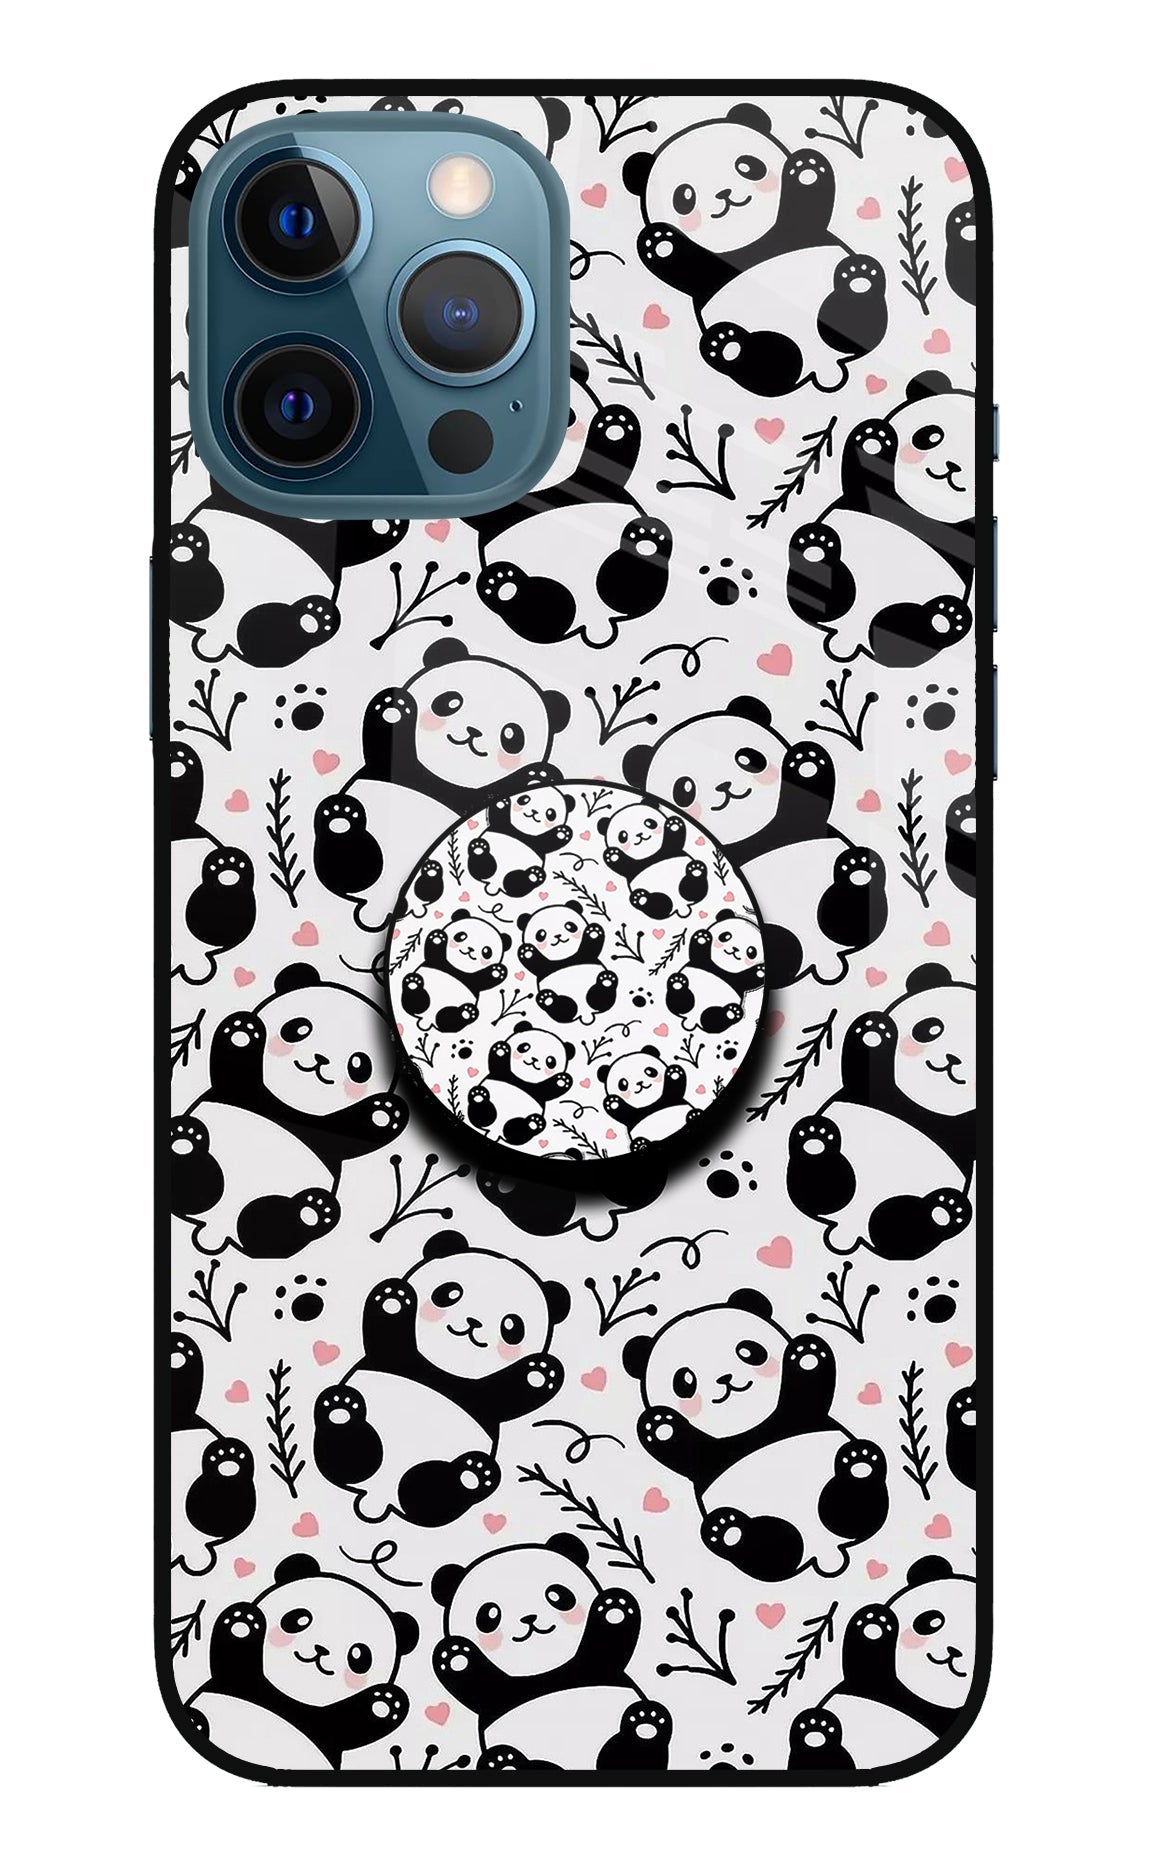 Cute Panda iPhone 12 Pro Max Glass Case